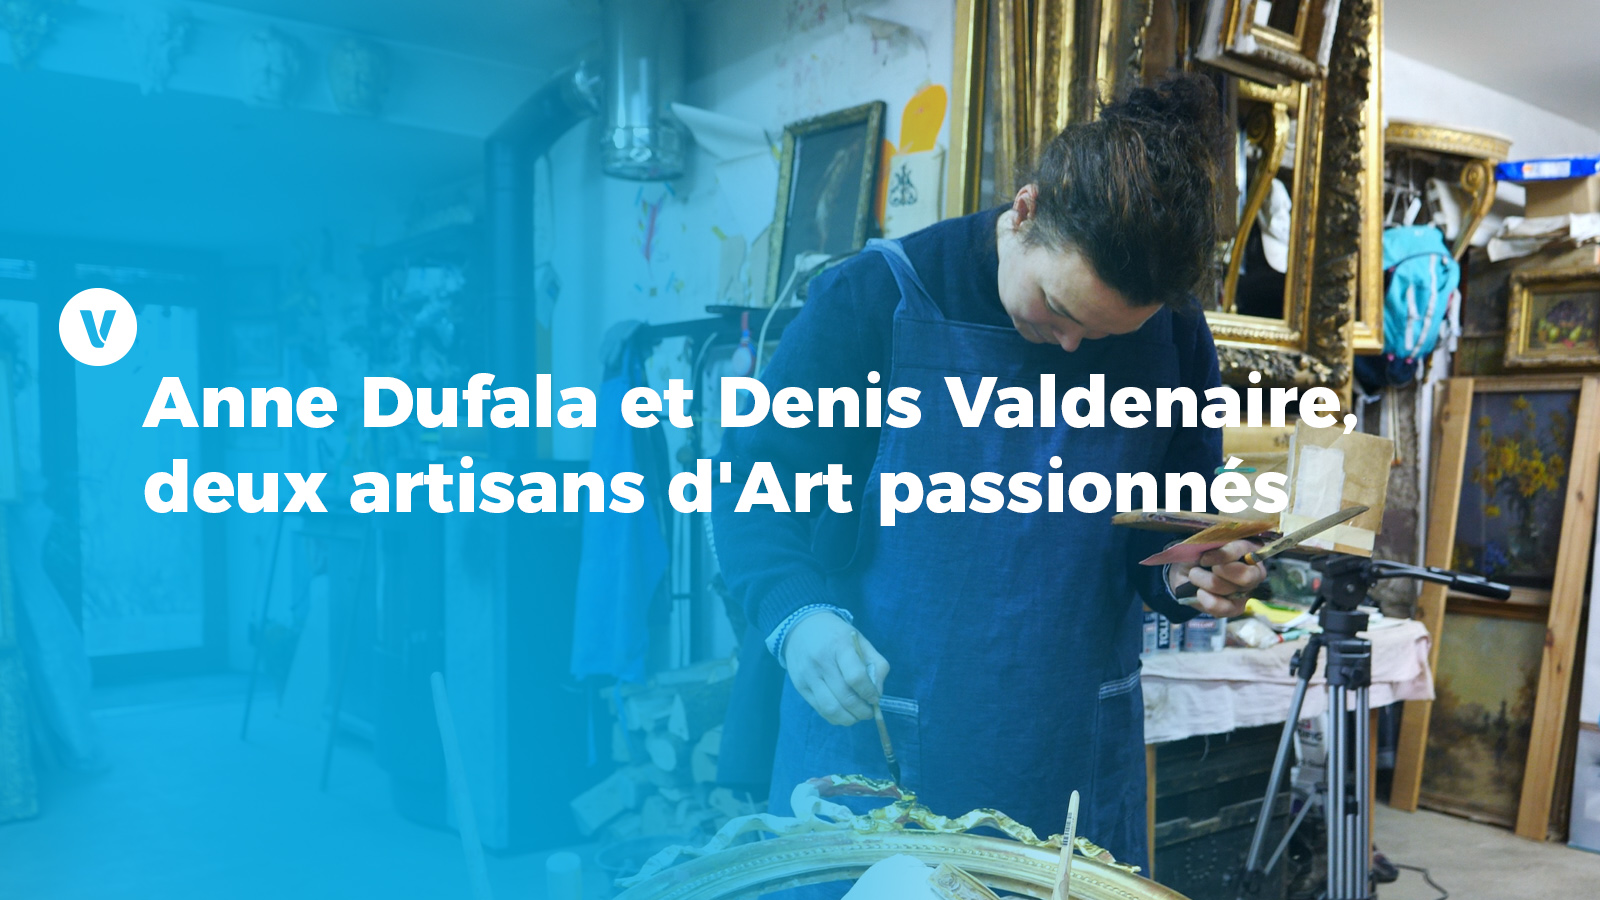 Anne Dufala et Denis Valdenaire, deux artisans d'Art passionnés